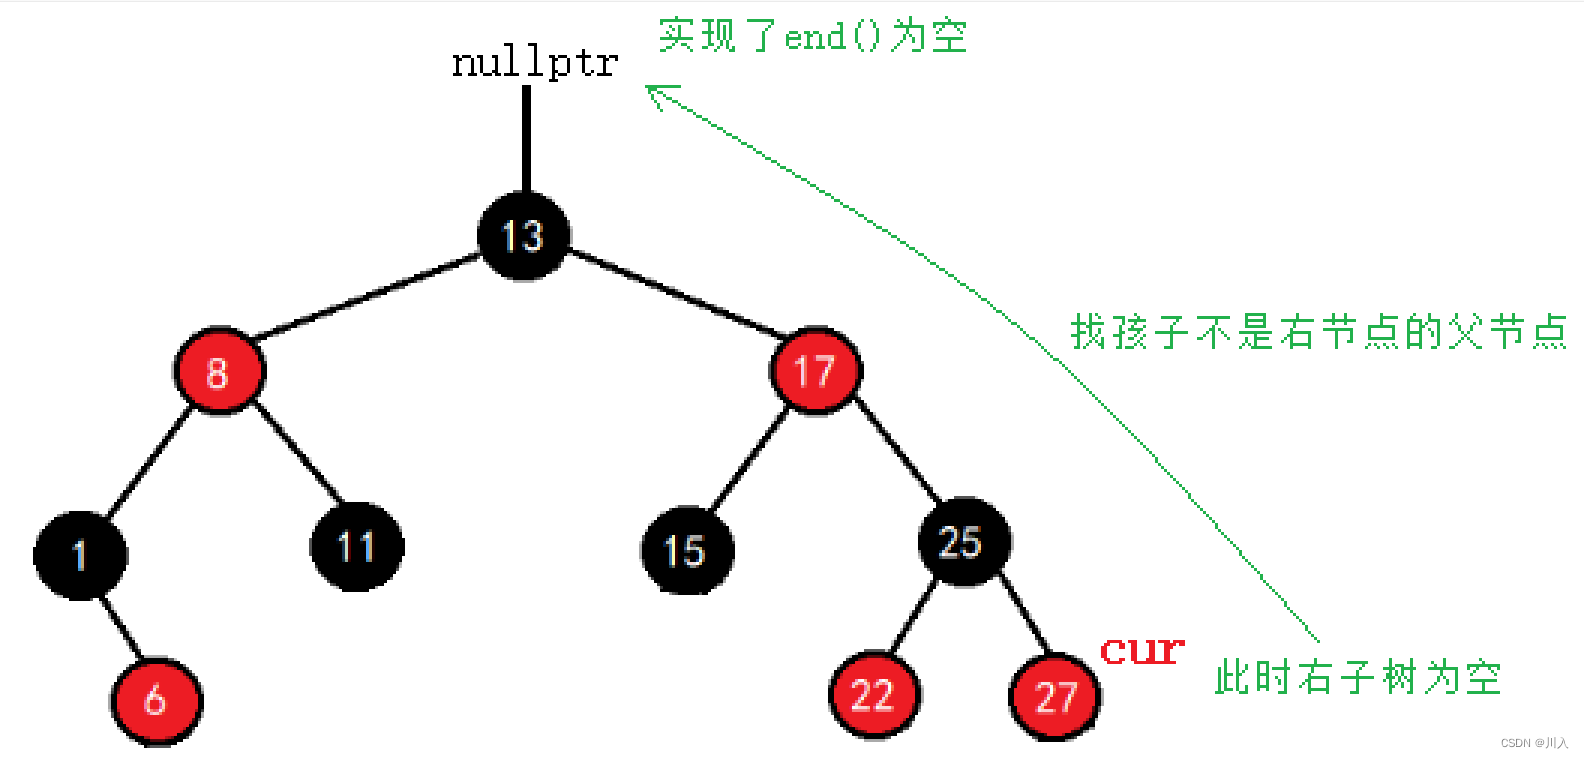 【C++ STL】-- 用一棵红黑树的插入实现同时封装map与set